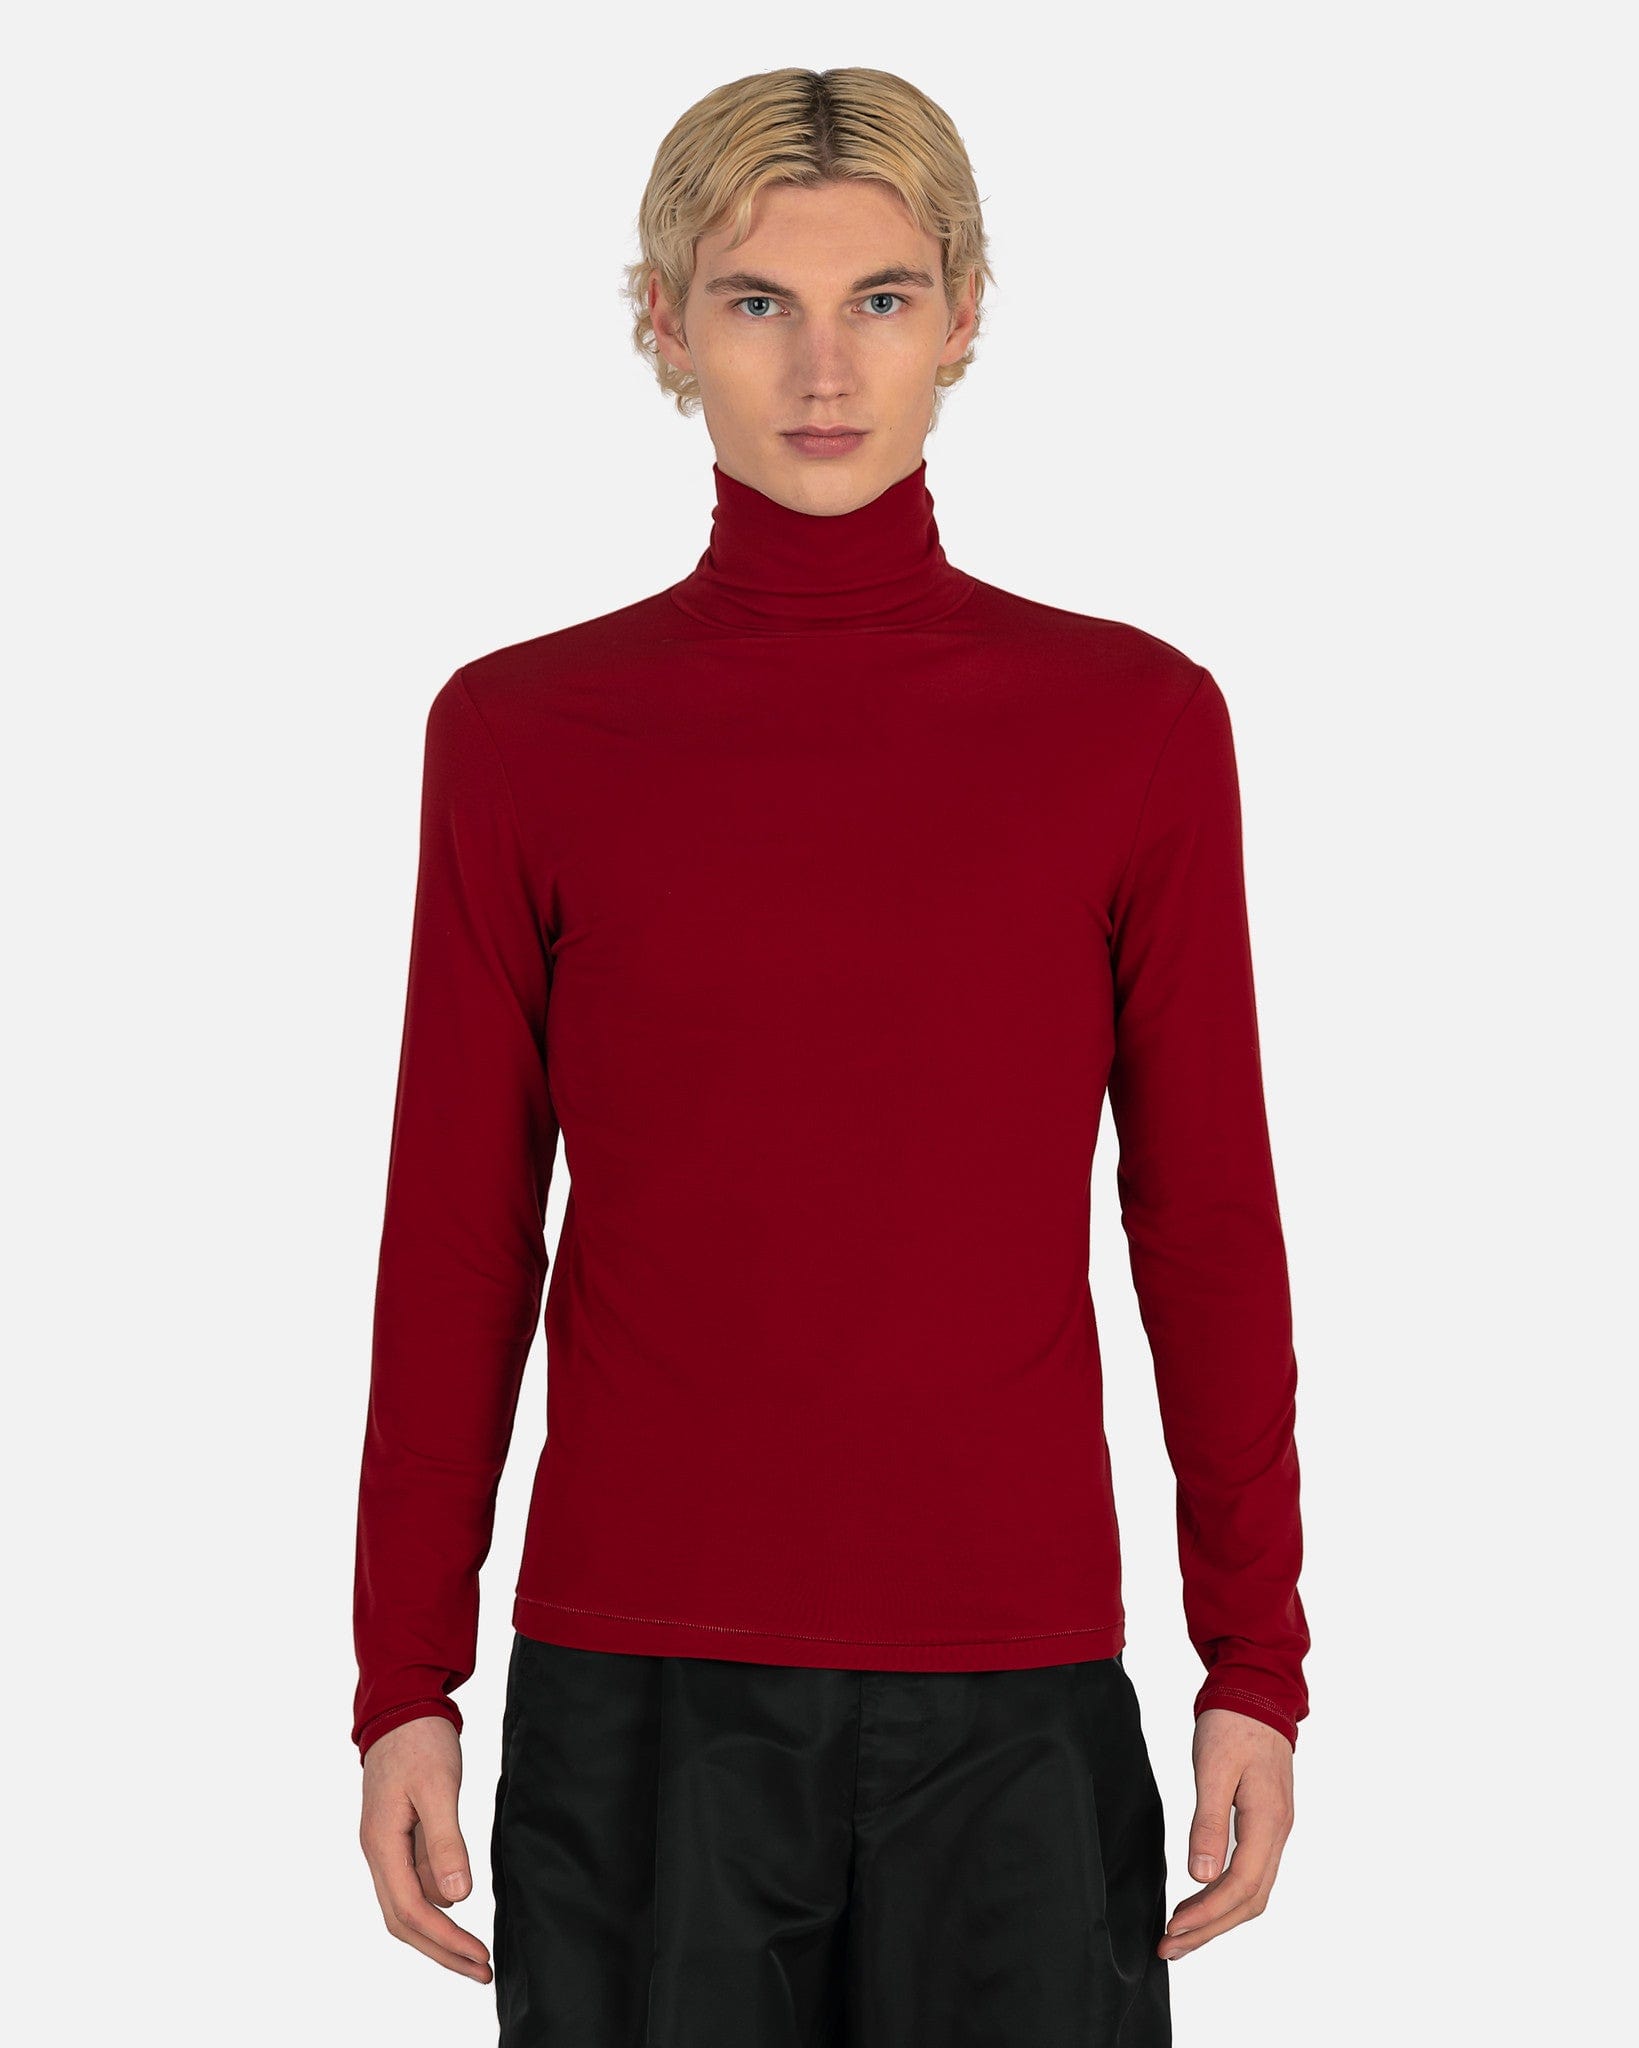 Dries Van Noten Men's Shirts Heyze Jersey in Red